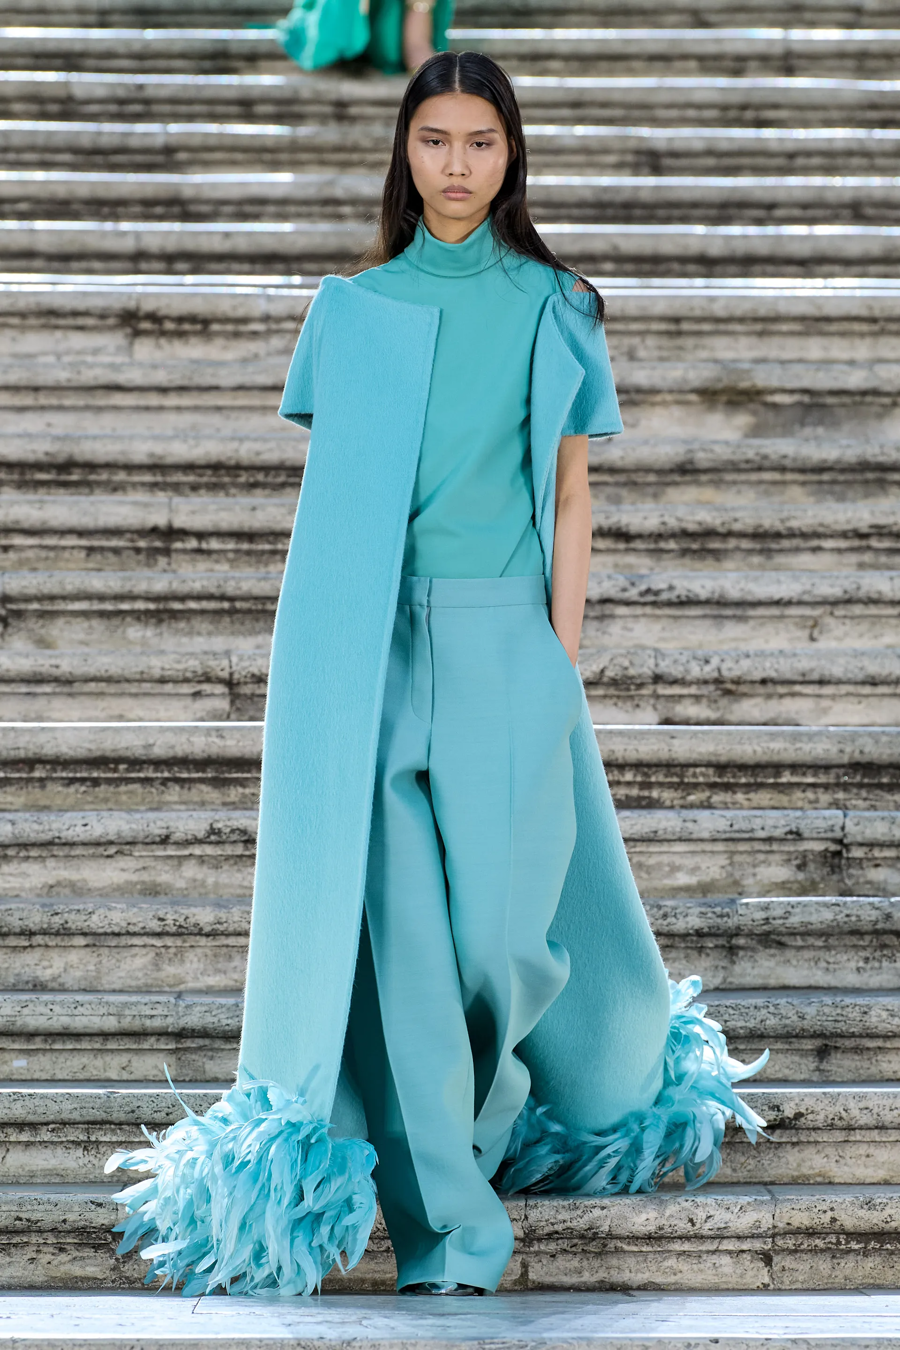 Valentino Haute Couture 2022: BST khiến Dior phải làm đơn khiếu nại - Ảnh 6